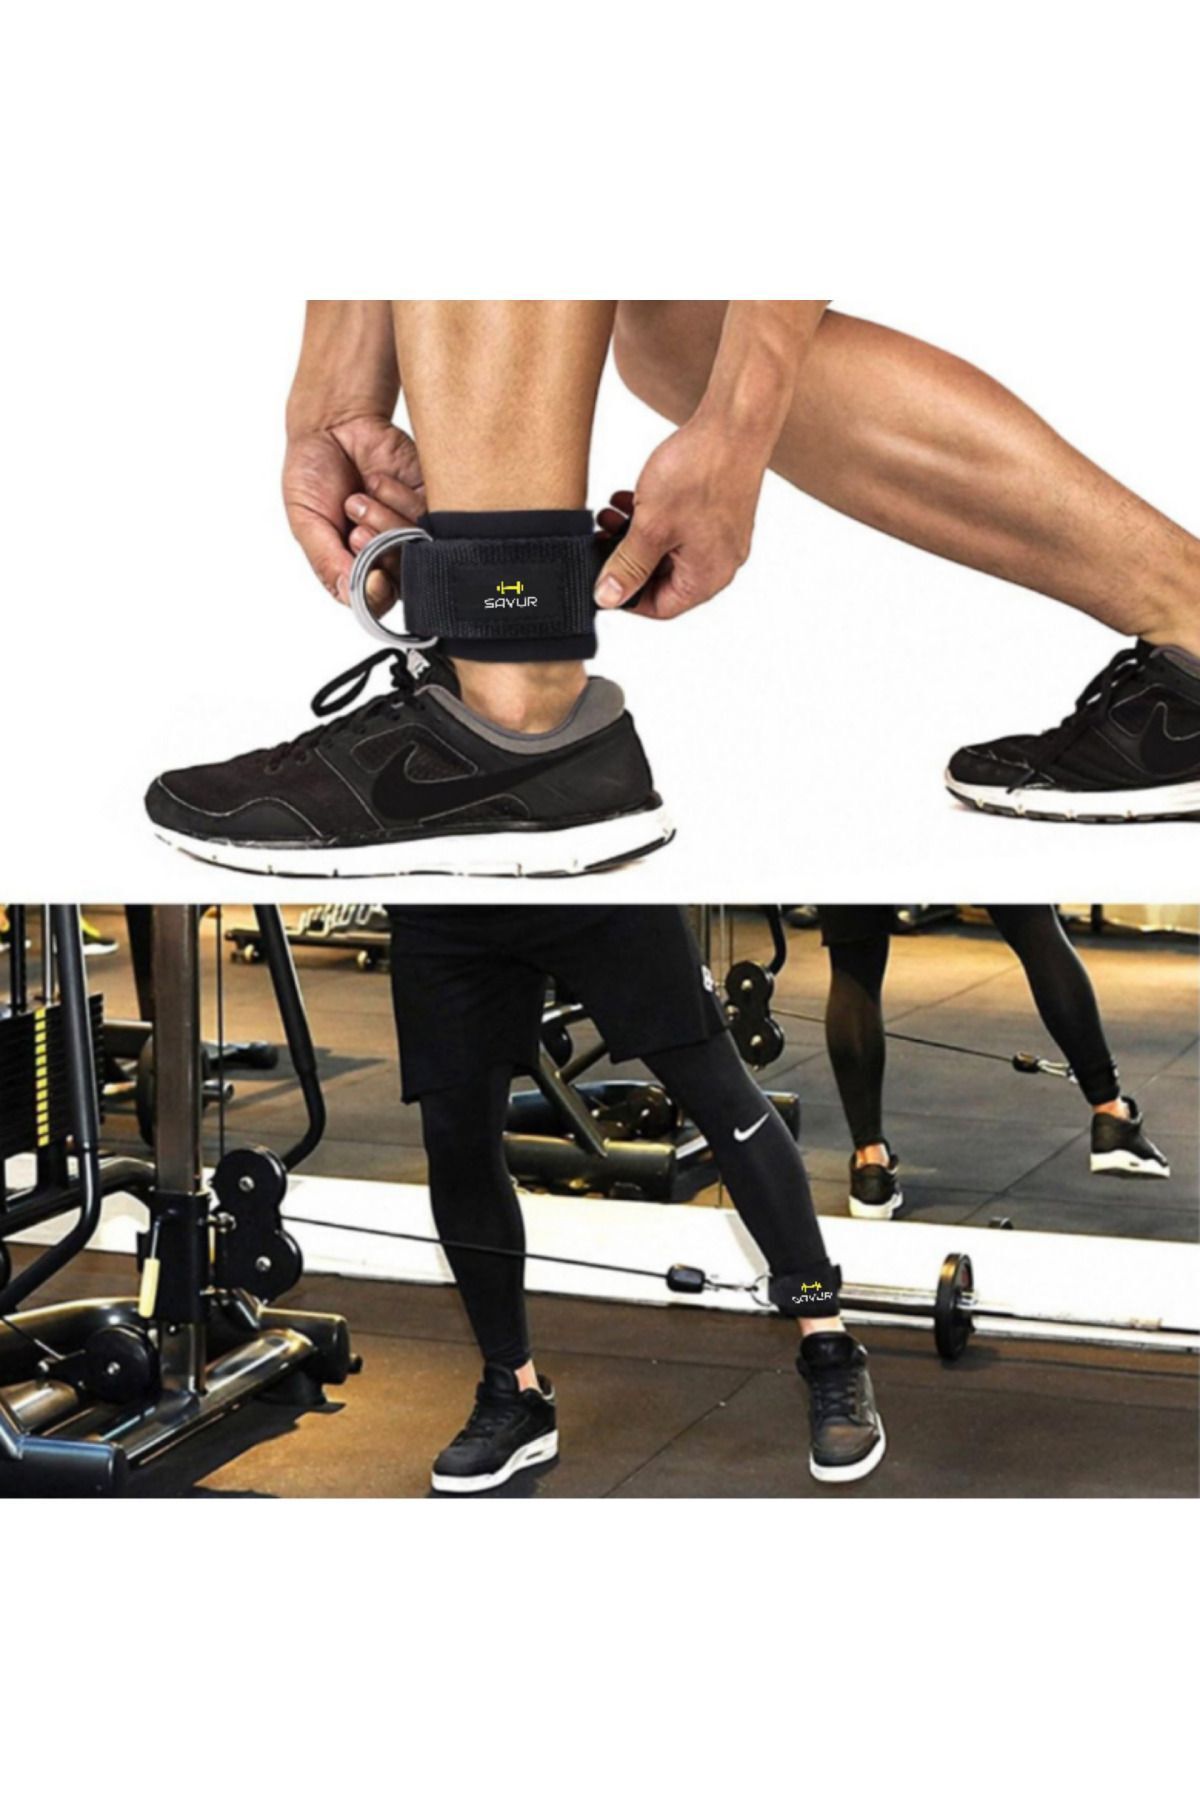 Genel Markalar Siyah Professional Ankle Strap - Ayak Bileği Kayışları, Fitness Ayak Bilekliği Çift Demirli-2 Adet